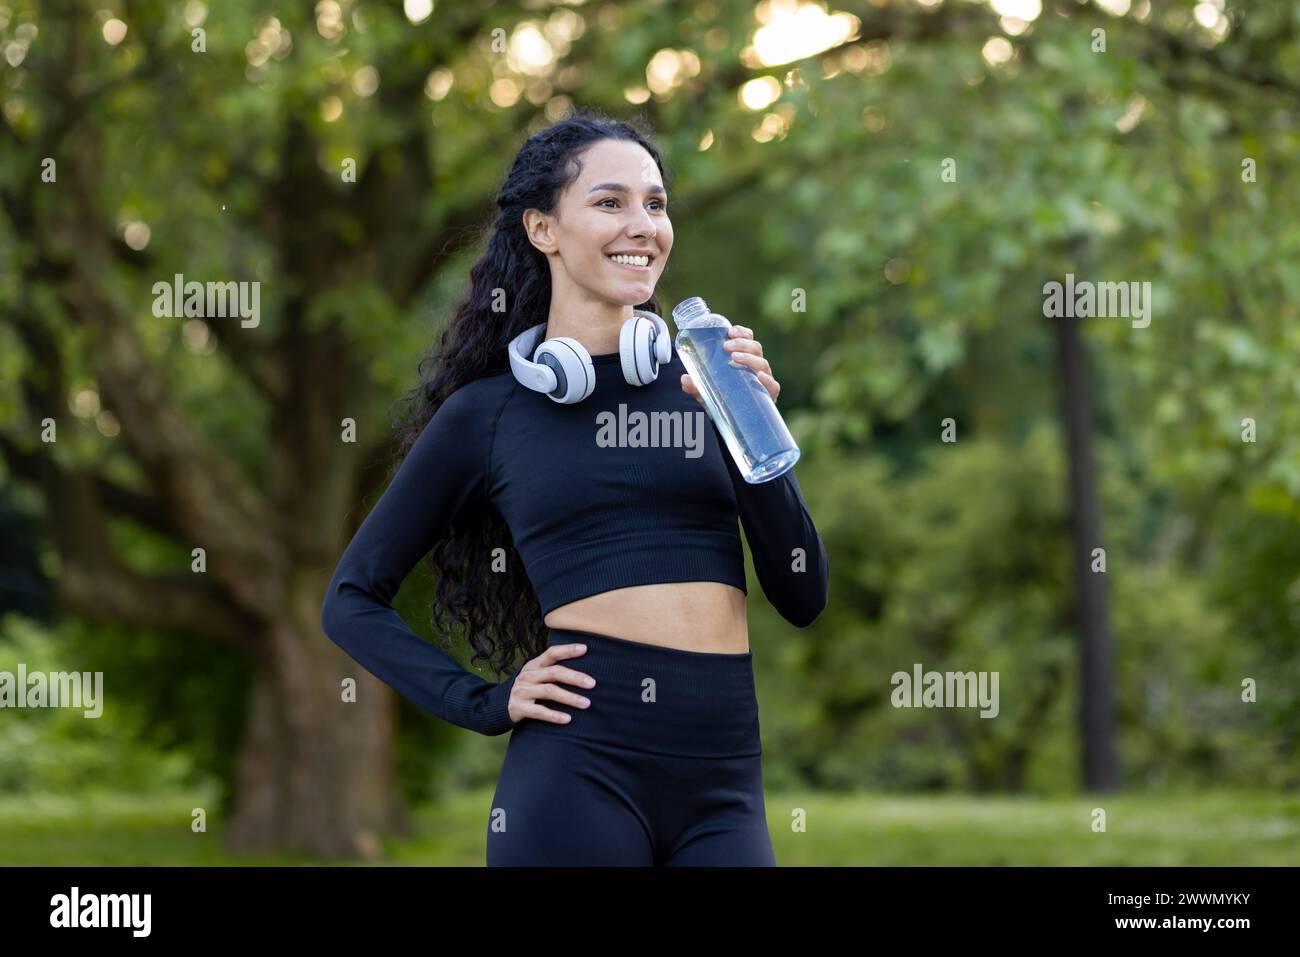 Lächelnde aktive Frau in Trainingsausrüstung, die eine Pause mit einer Wasserflasche in einem grünen Park macht, Kopfhörer um den Hals. Stockfoto